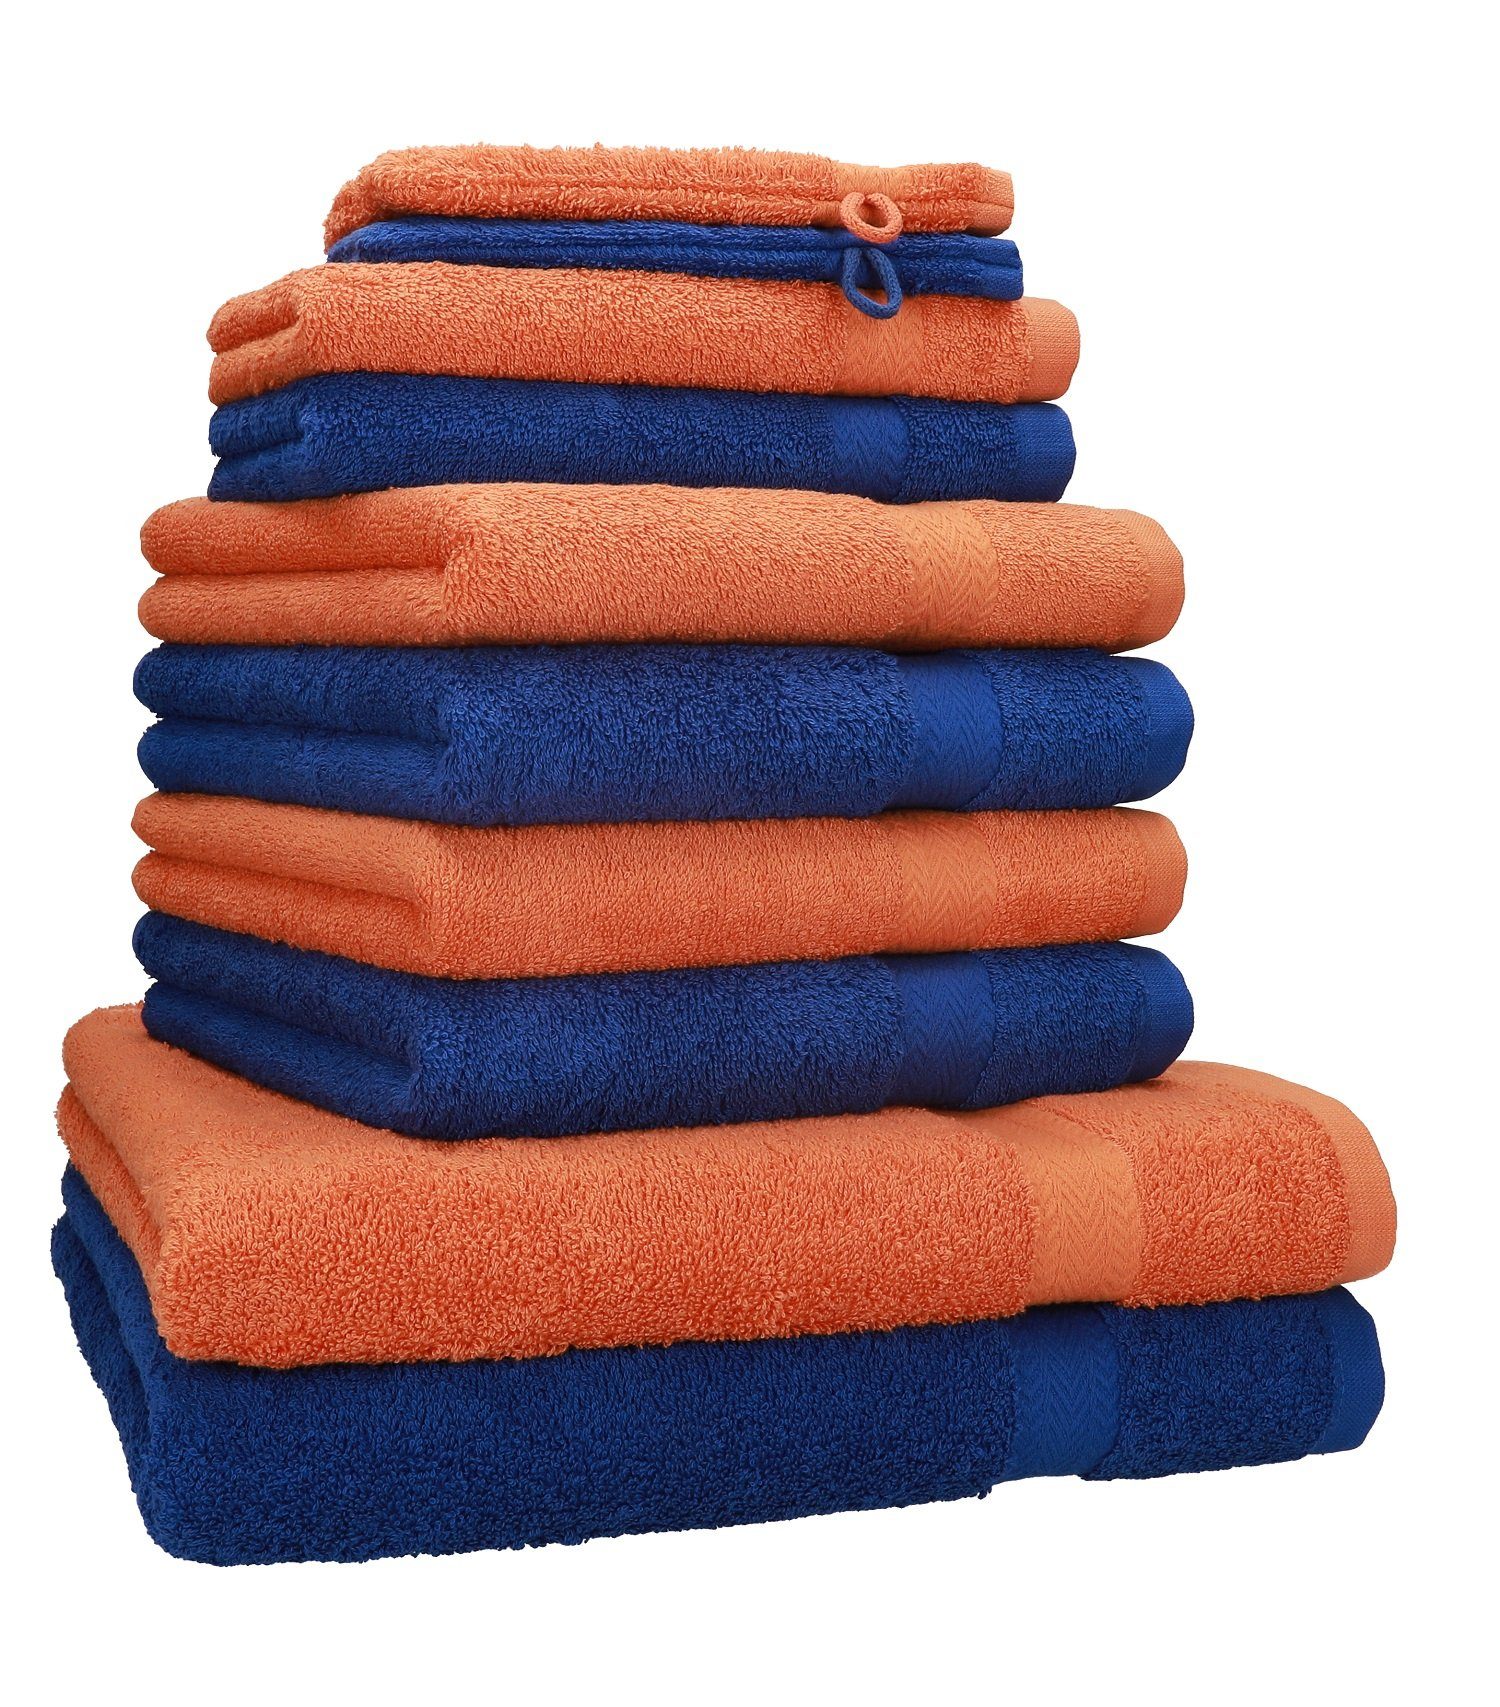 Betz Handtuch Set 10 TLG. Handtuch Set Premium Farbe Royalblau & Orange, 100% Baumwolle